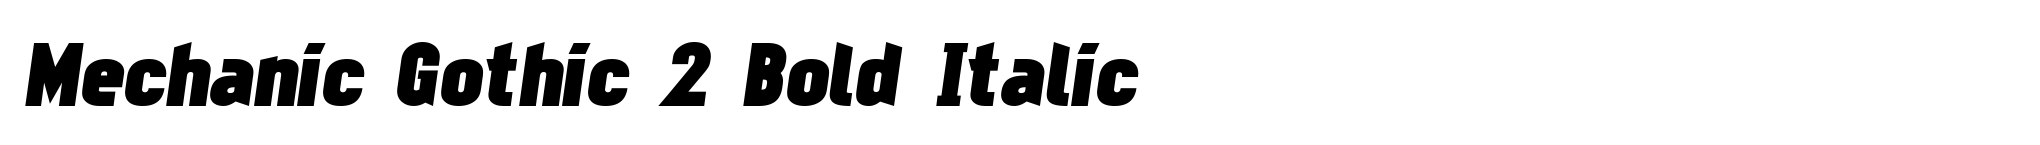 Mechanic Gothic 2 Bold Italic image